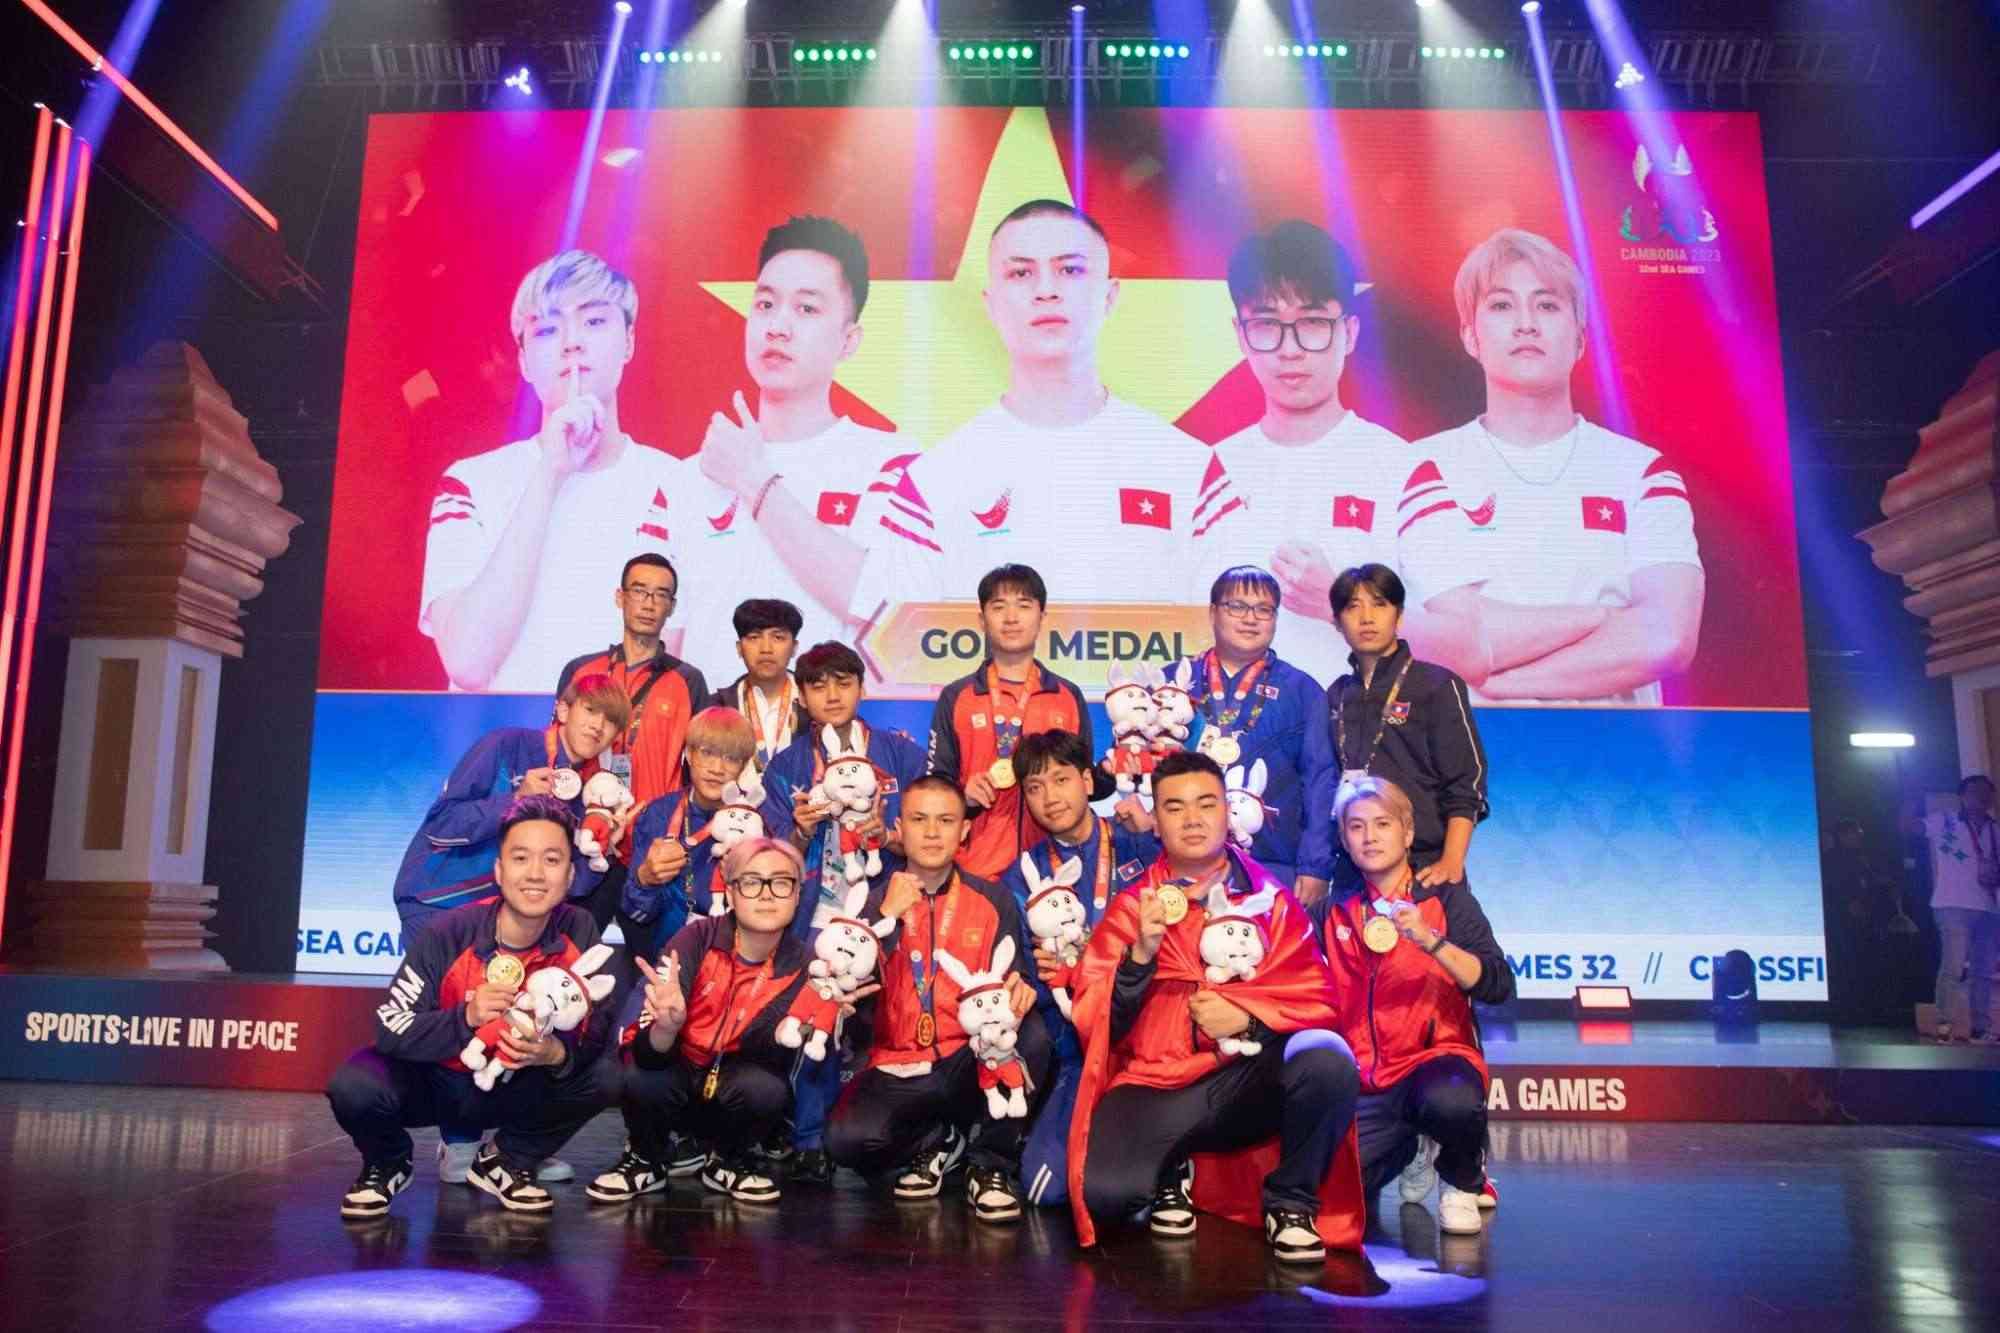 Đội tuyển Đột Kích đã đem về Huy Chương Vàng duy nhất cho Esports Việt Nam tại SEA Games 32.